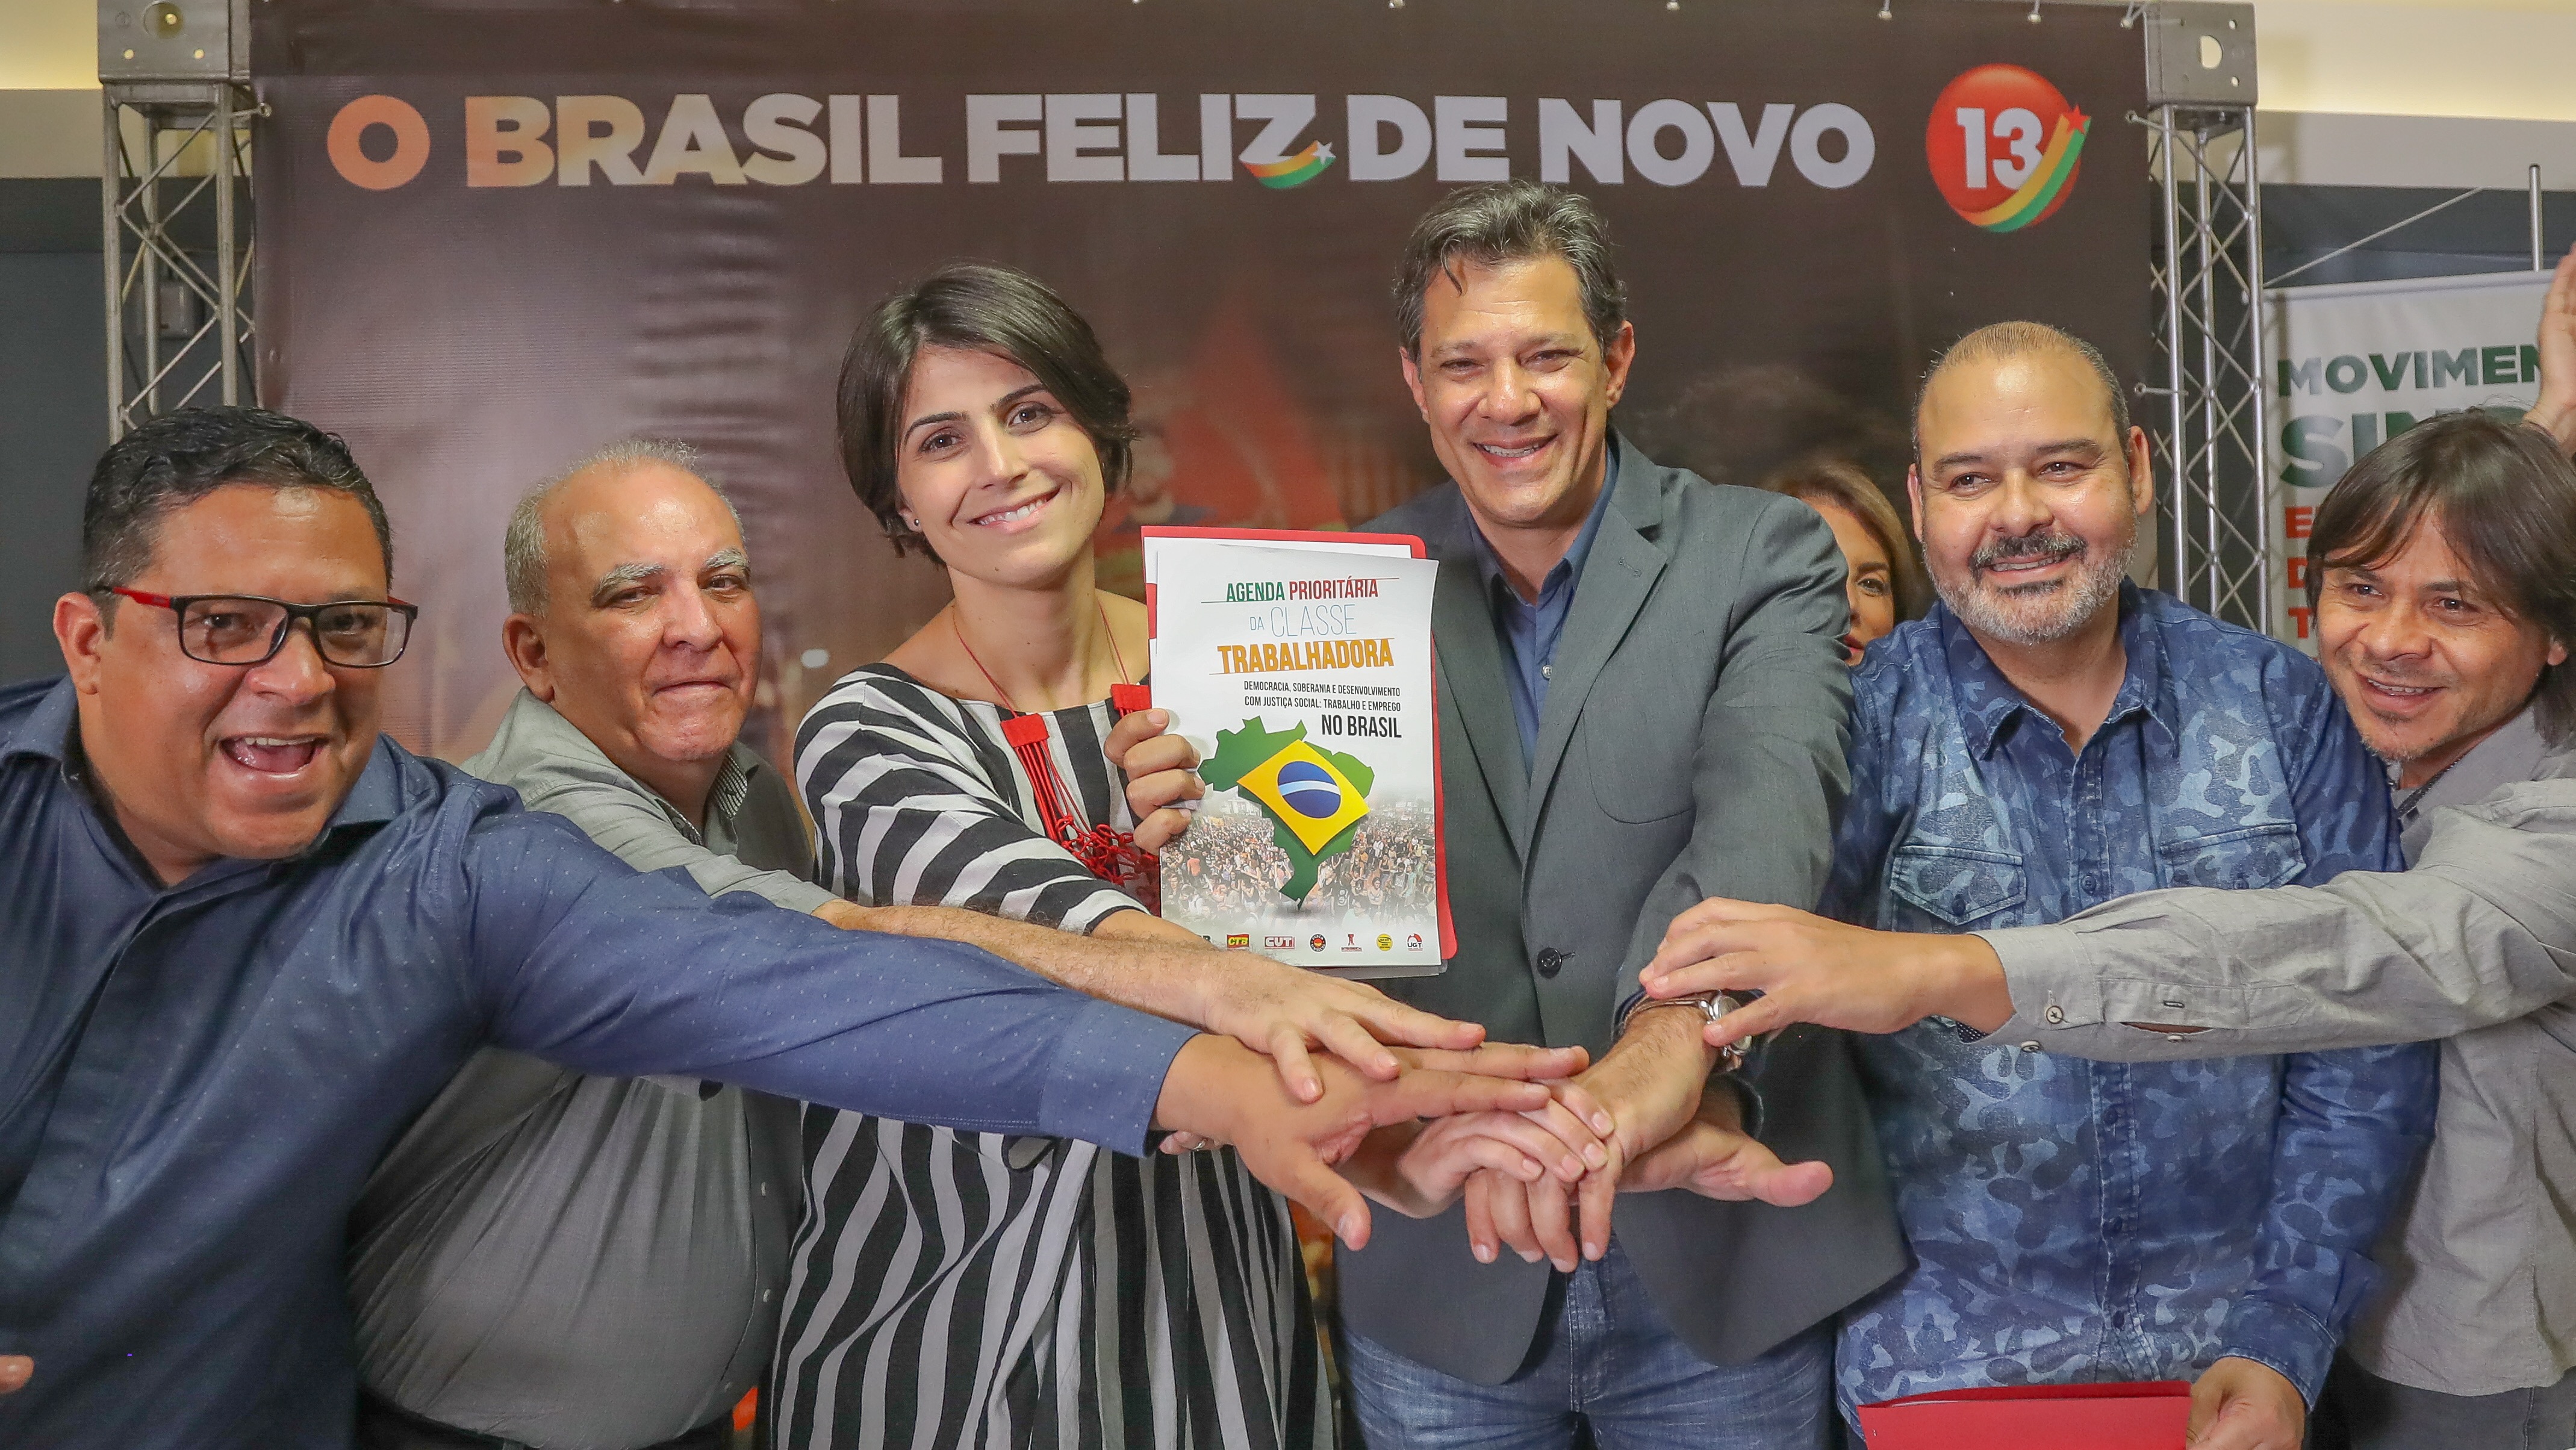 Haddad: “Não podemos permitir que o Brasil dê marcha à ré”